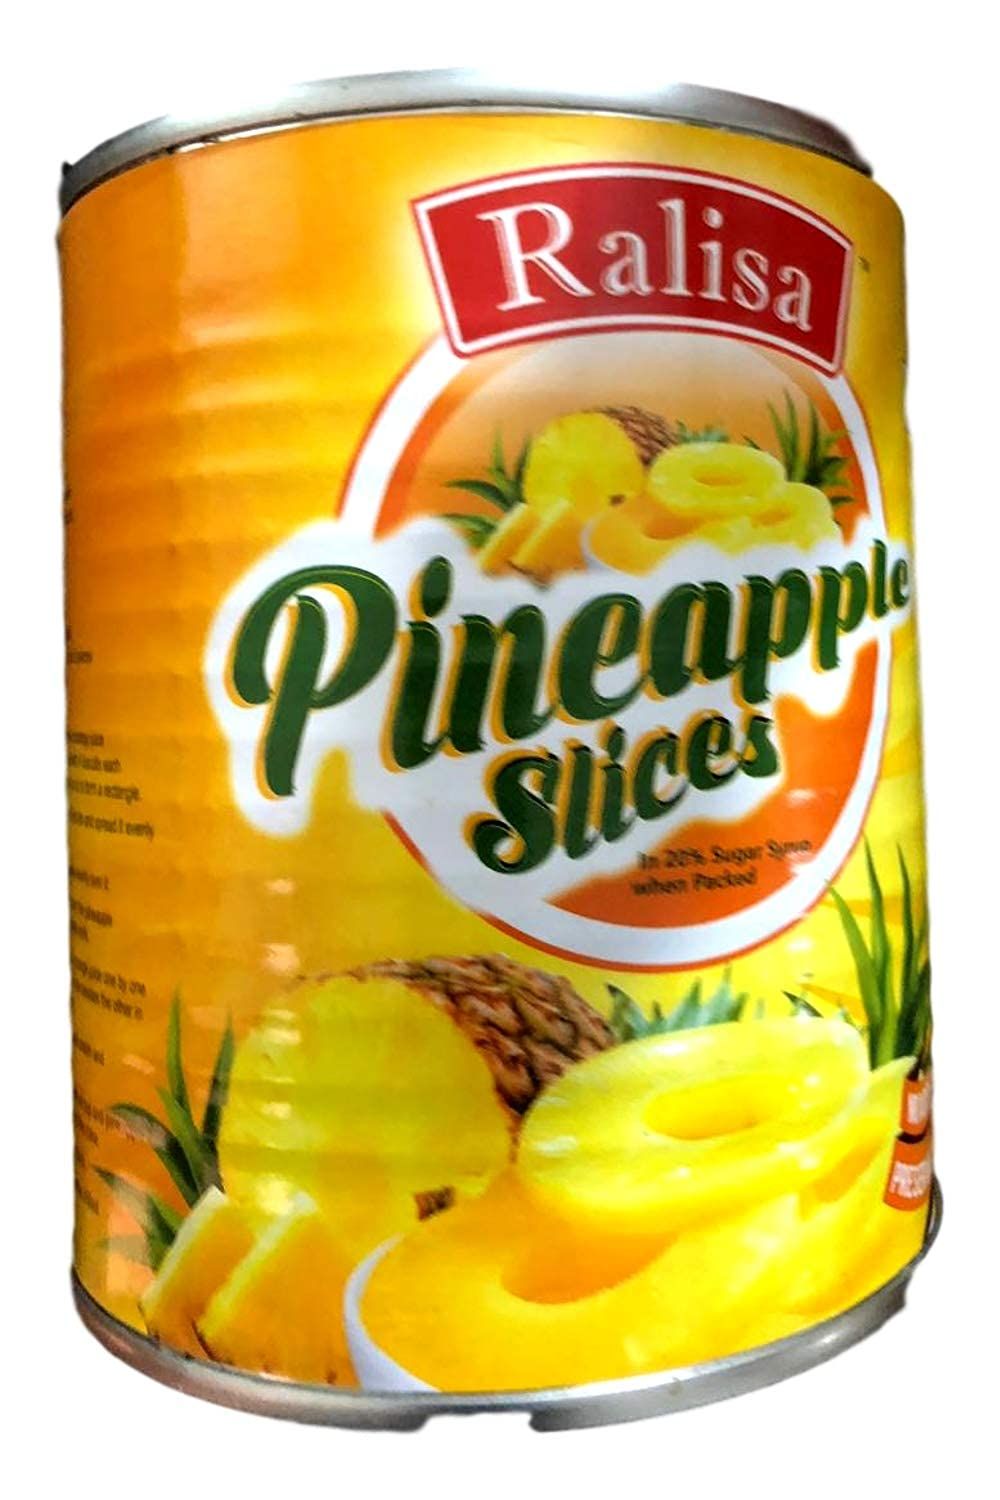 Ralisa Pineapple Slices Image